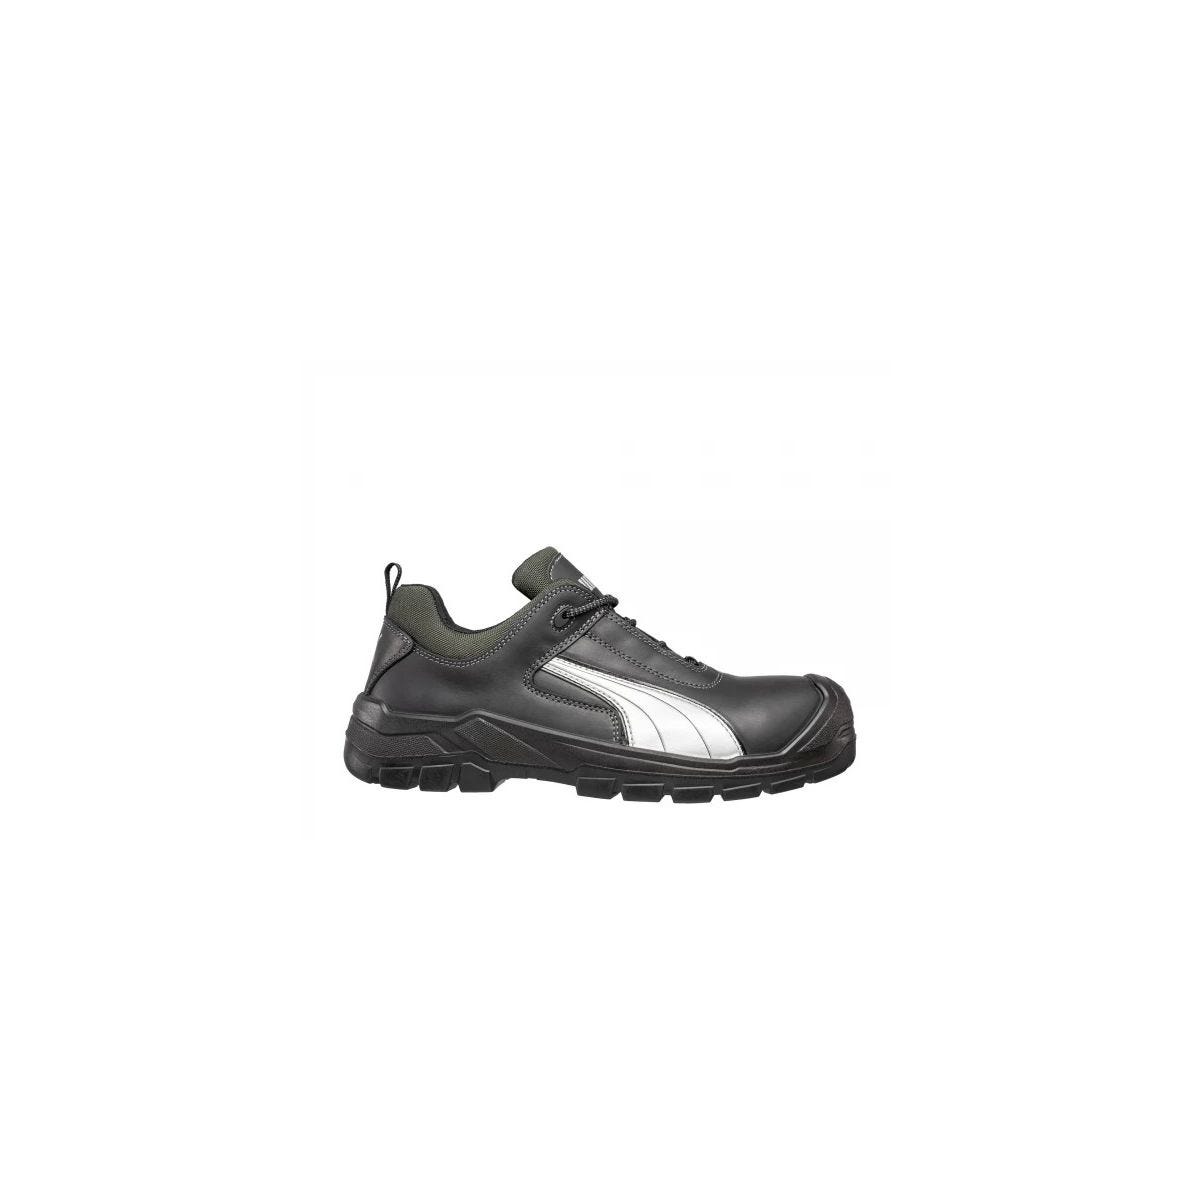 Chaussures de sécurité Cascades low S3 HRO SRC - Puma - Taille 41 0